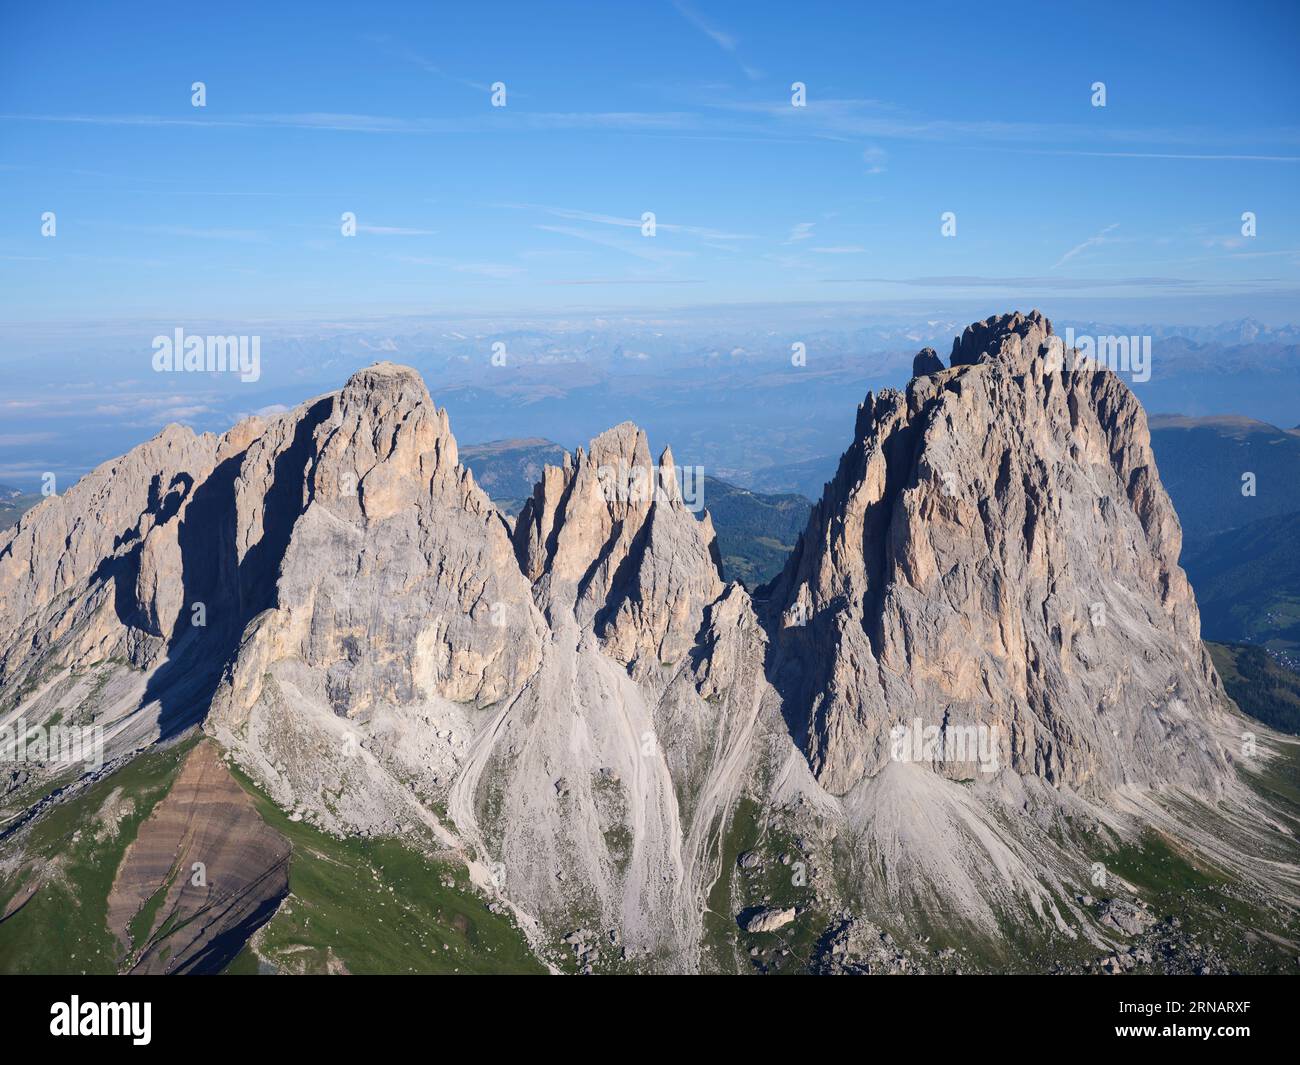 LUFTAUFNAHME. Sassolungo-Gruppe mit ihrem höchsten Gipfel, dem 3181 Meter hohen Sassolungo (italienisch) oder Langkofel (deutsch). Dolomiten, Italien. Stockfoto